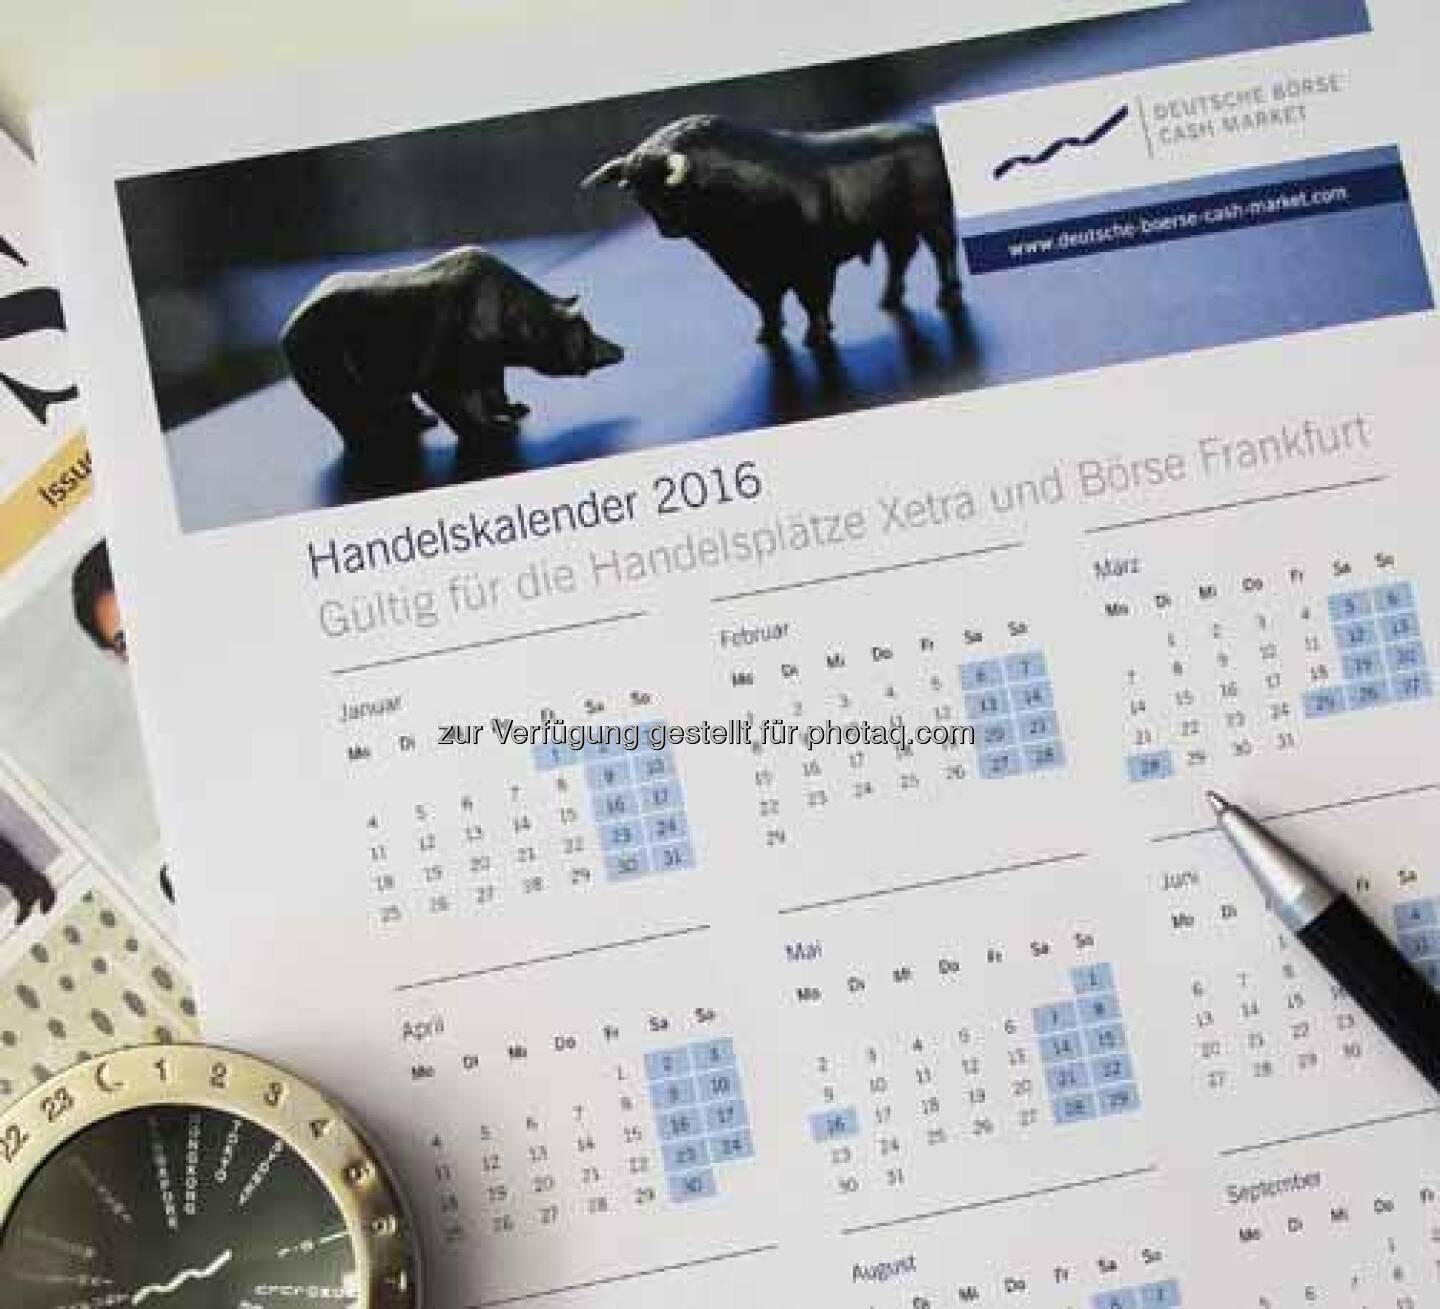 DAX Handelskalender für 2016 ist online! Gehandelt wird an der Frankfurter Wertpapierbörse im nächsten Jahr montags bis freitags außer am 1. Januar, 25. März, 28. März, 16. Mai, 3. Oktober und am 26. Dezember. Der 16. Mai sowie der 3. Oktober sind Erfüllungstage. Den Handelskalender 2016 finden Sie hier: http://bit.ly/1SeckGt